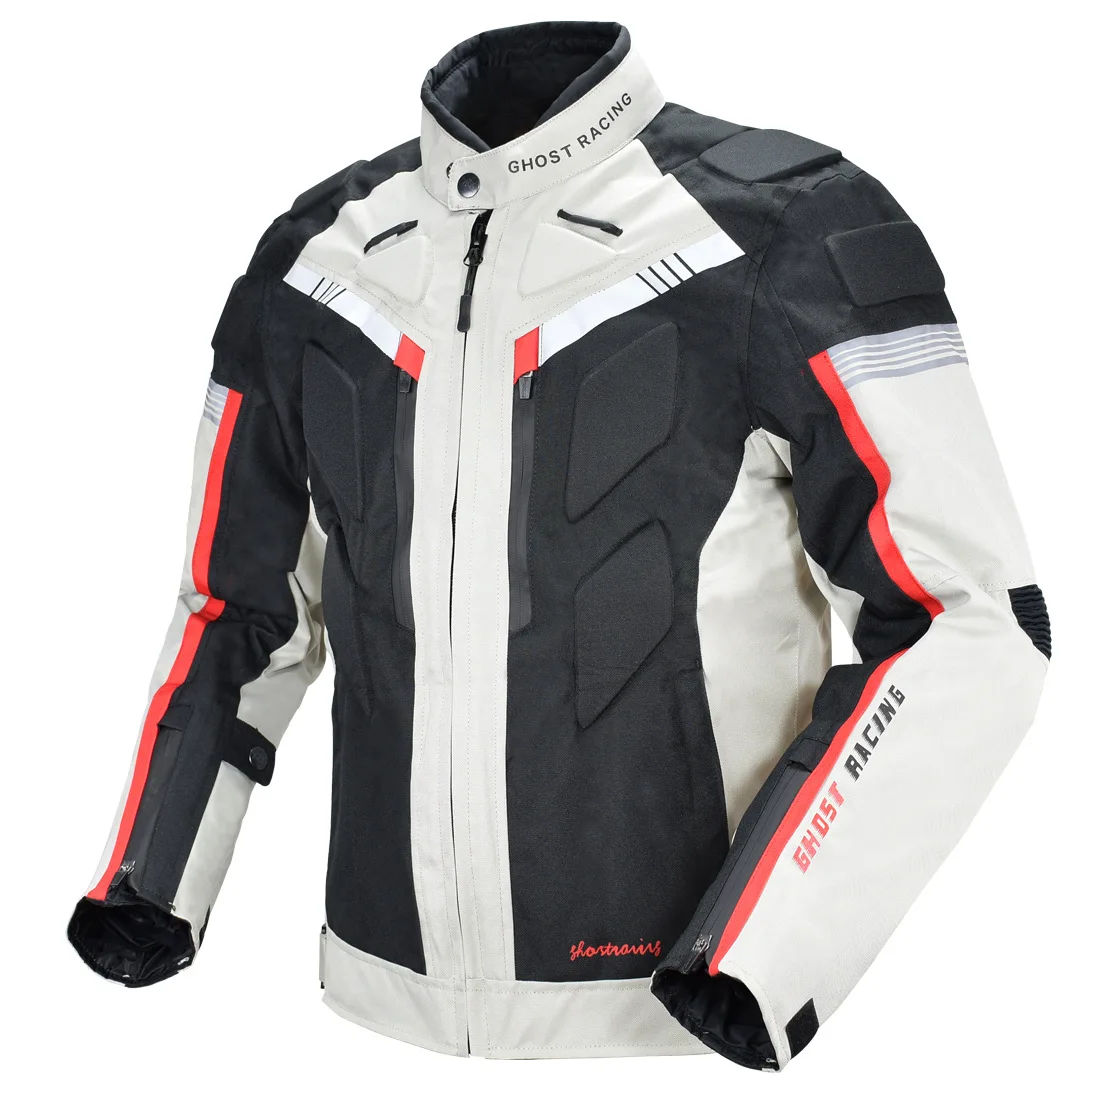 GHOST RACING Motorcycle Racing Jacket Man Waterproof Dirt Bike Pants Set... - $121.80+